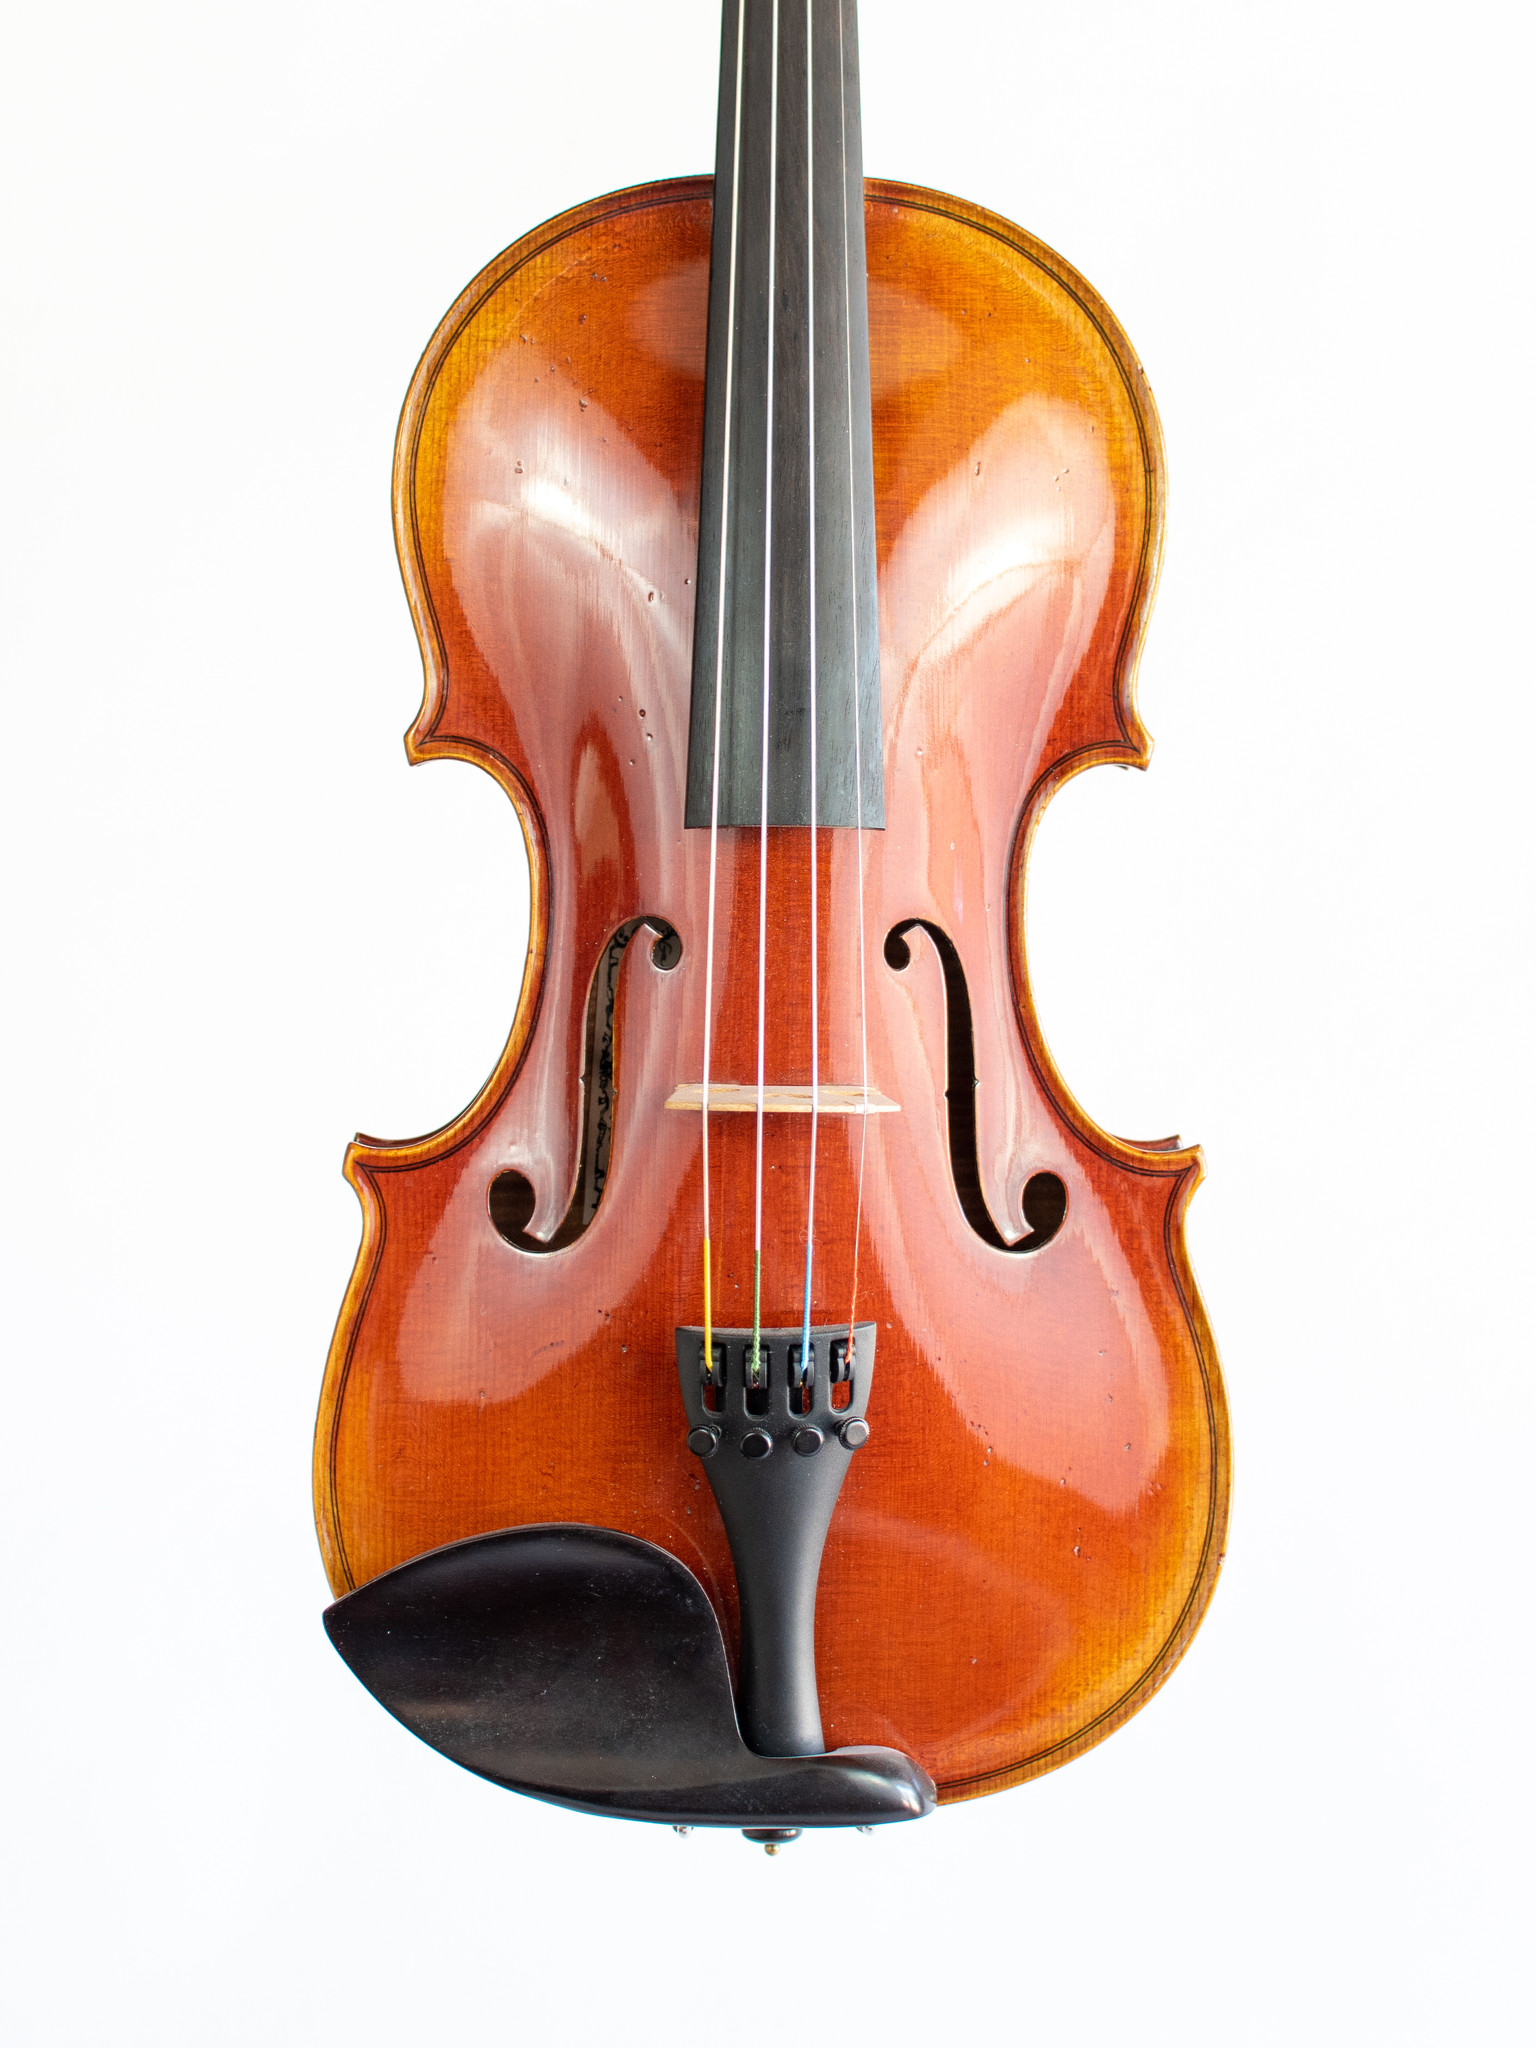 Henri Delille Henri Delille Deluxe, Guadagnini 1757 model violin, Belgium